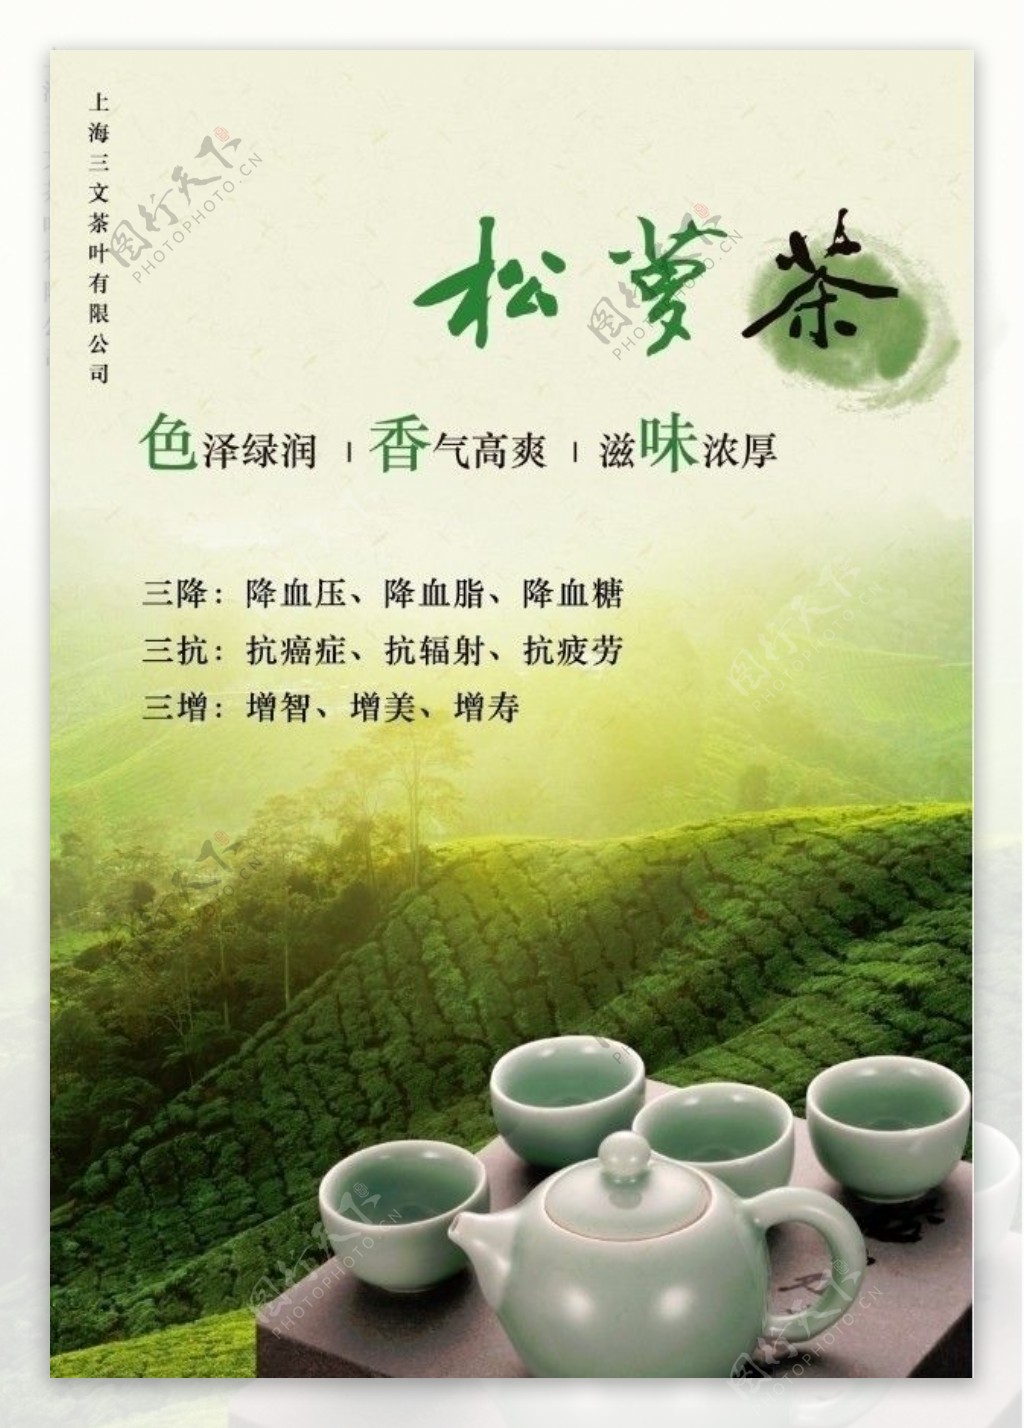 松萝茶叶广告图片